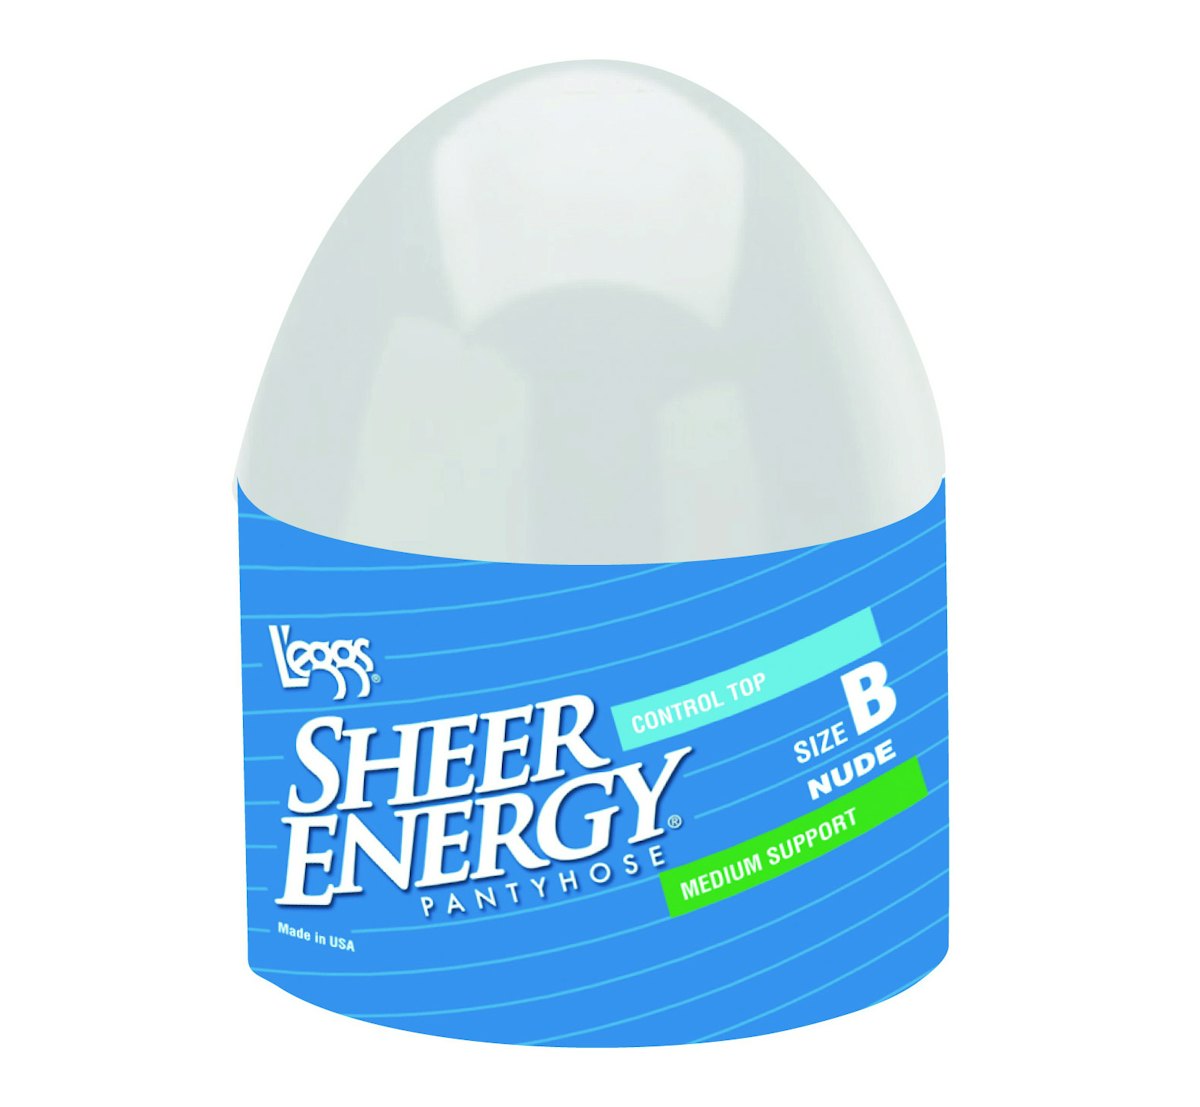 Iconic L'eggs Sheer Energy egg package returns